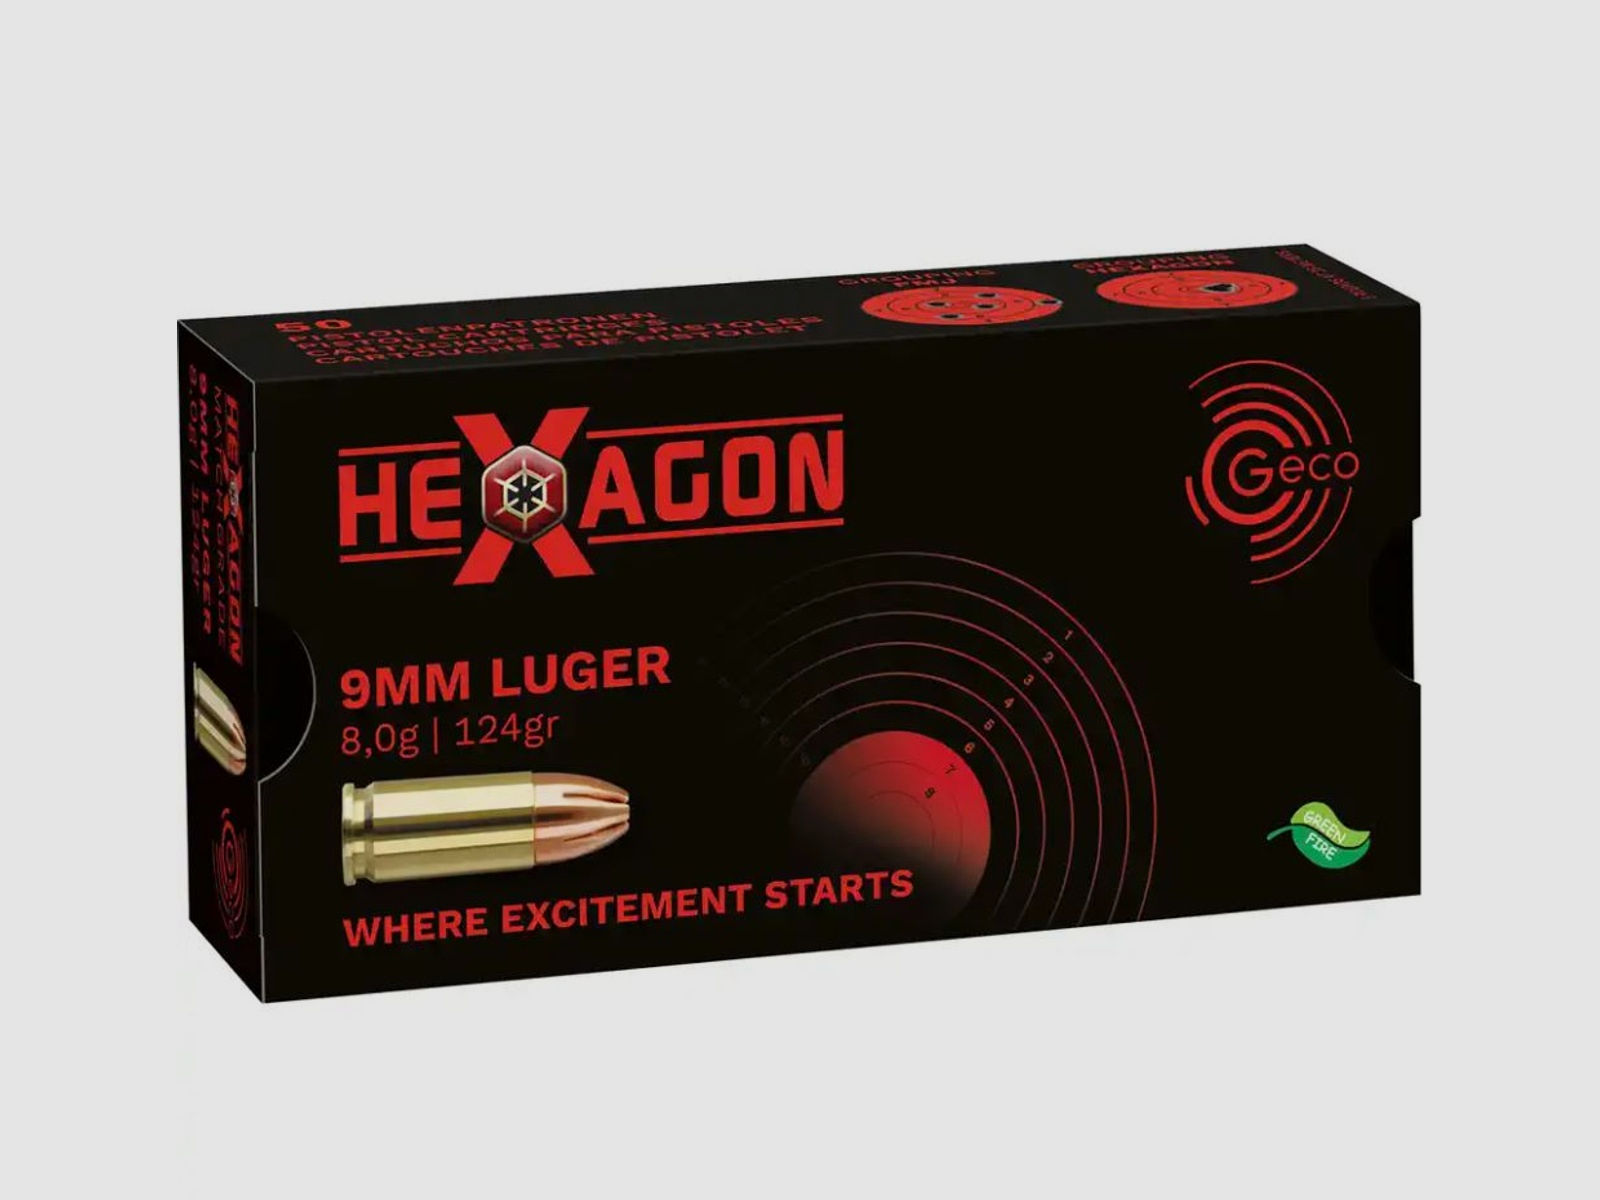 Geco 9mmLuger Hexagon SX 8,0g - 124gr